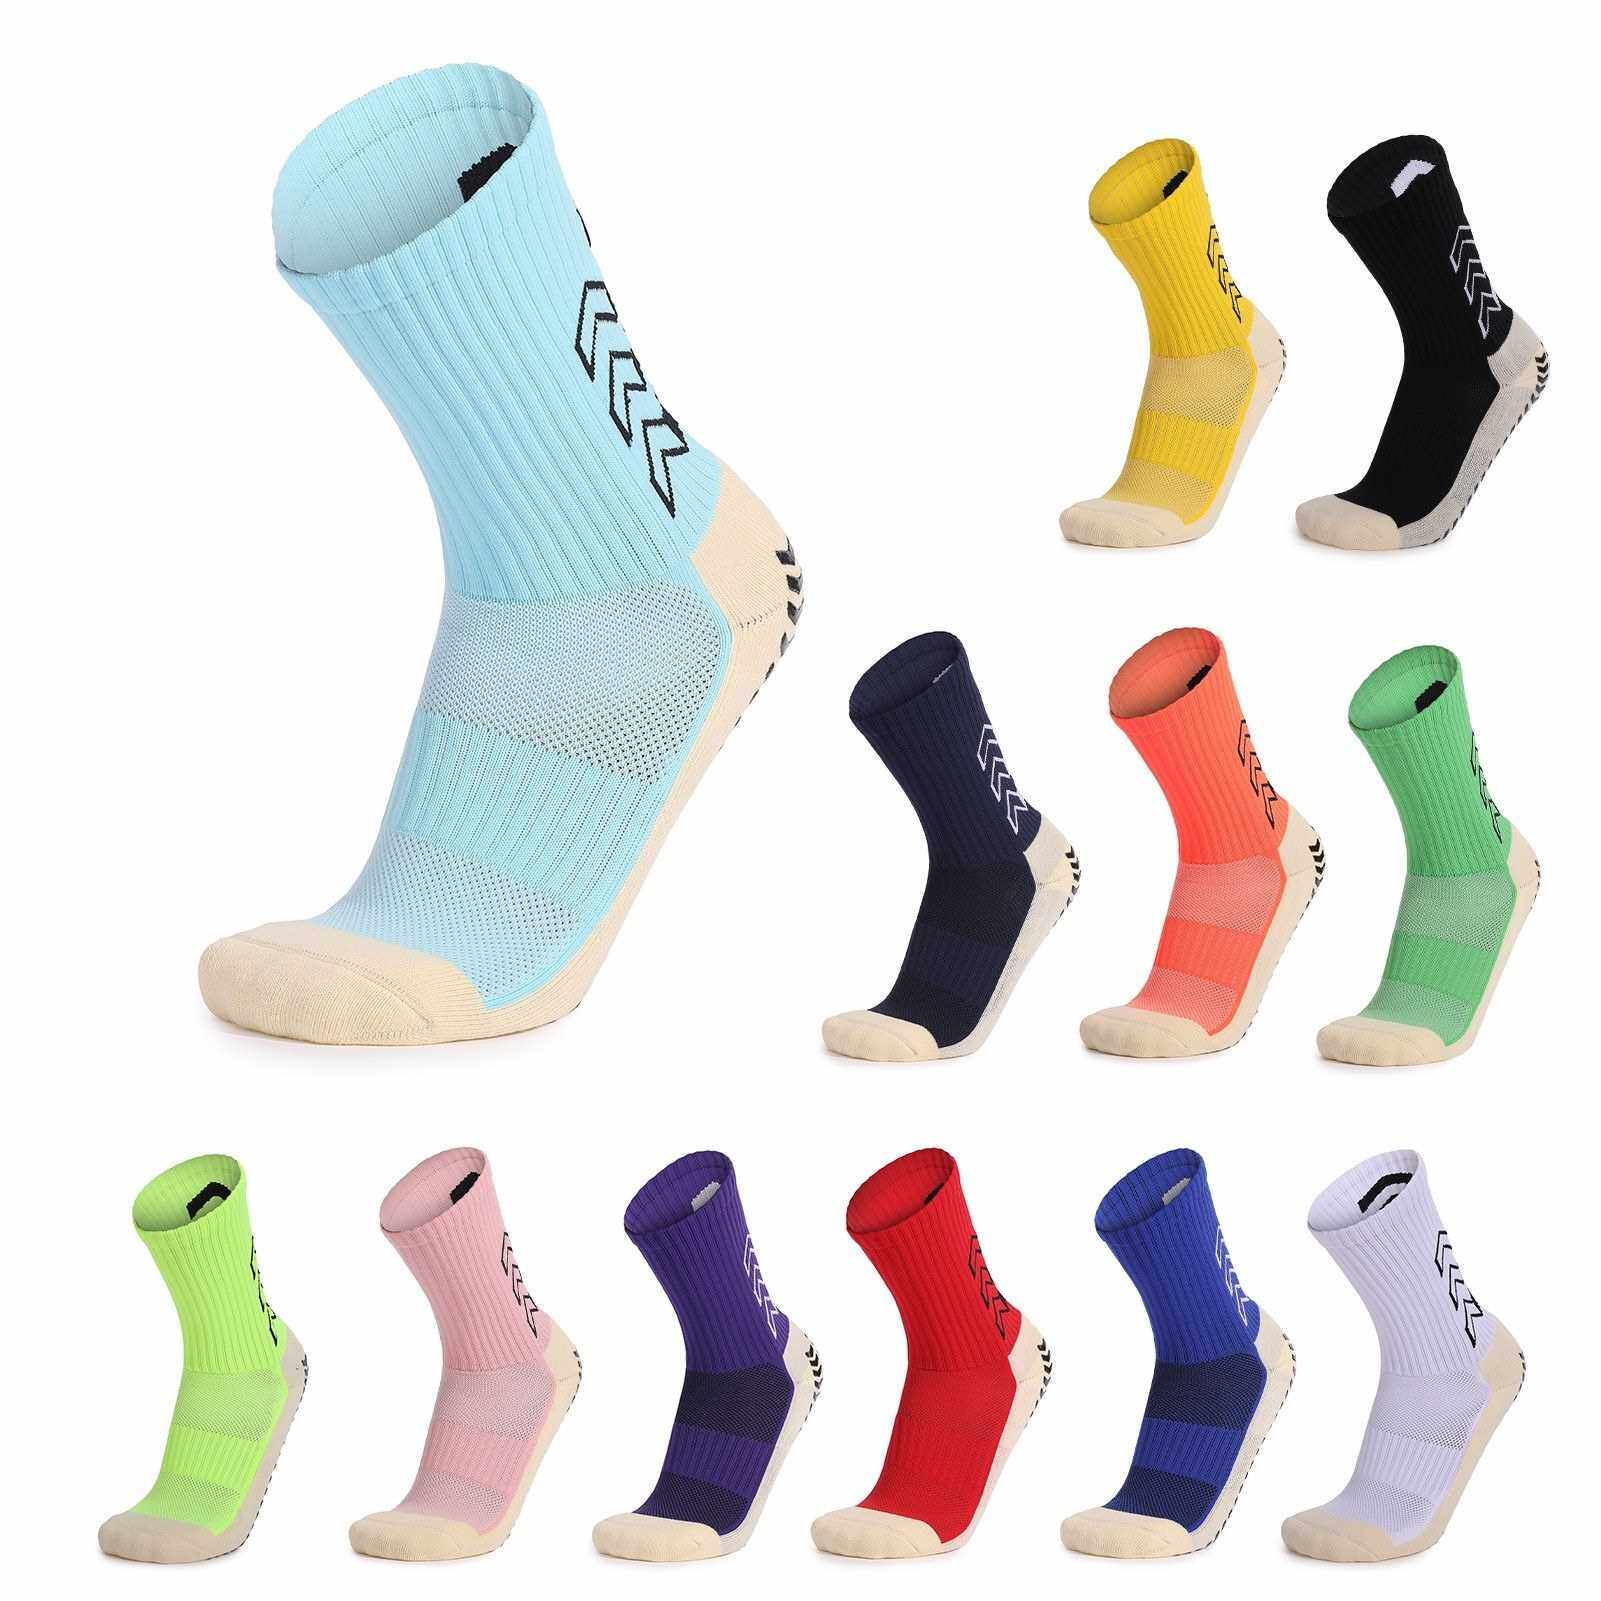 BEST SELLER Sport Cushioned Socks Non Slip Grip for Basketball Soccer Ski Cycling Athletic Socks (White)